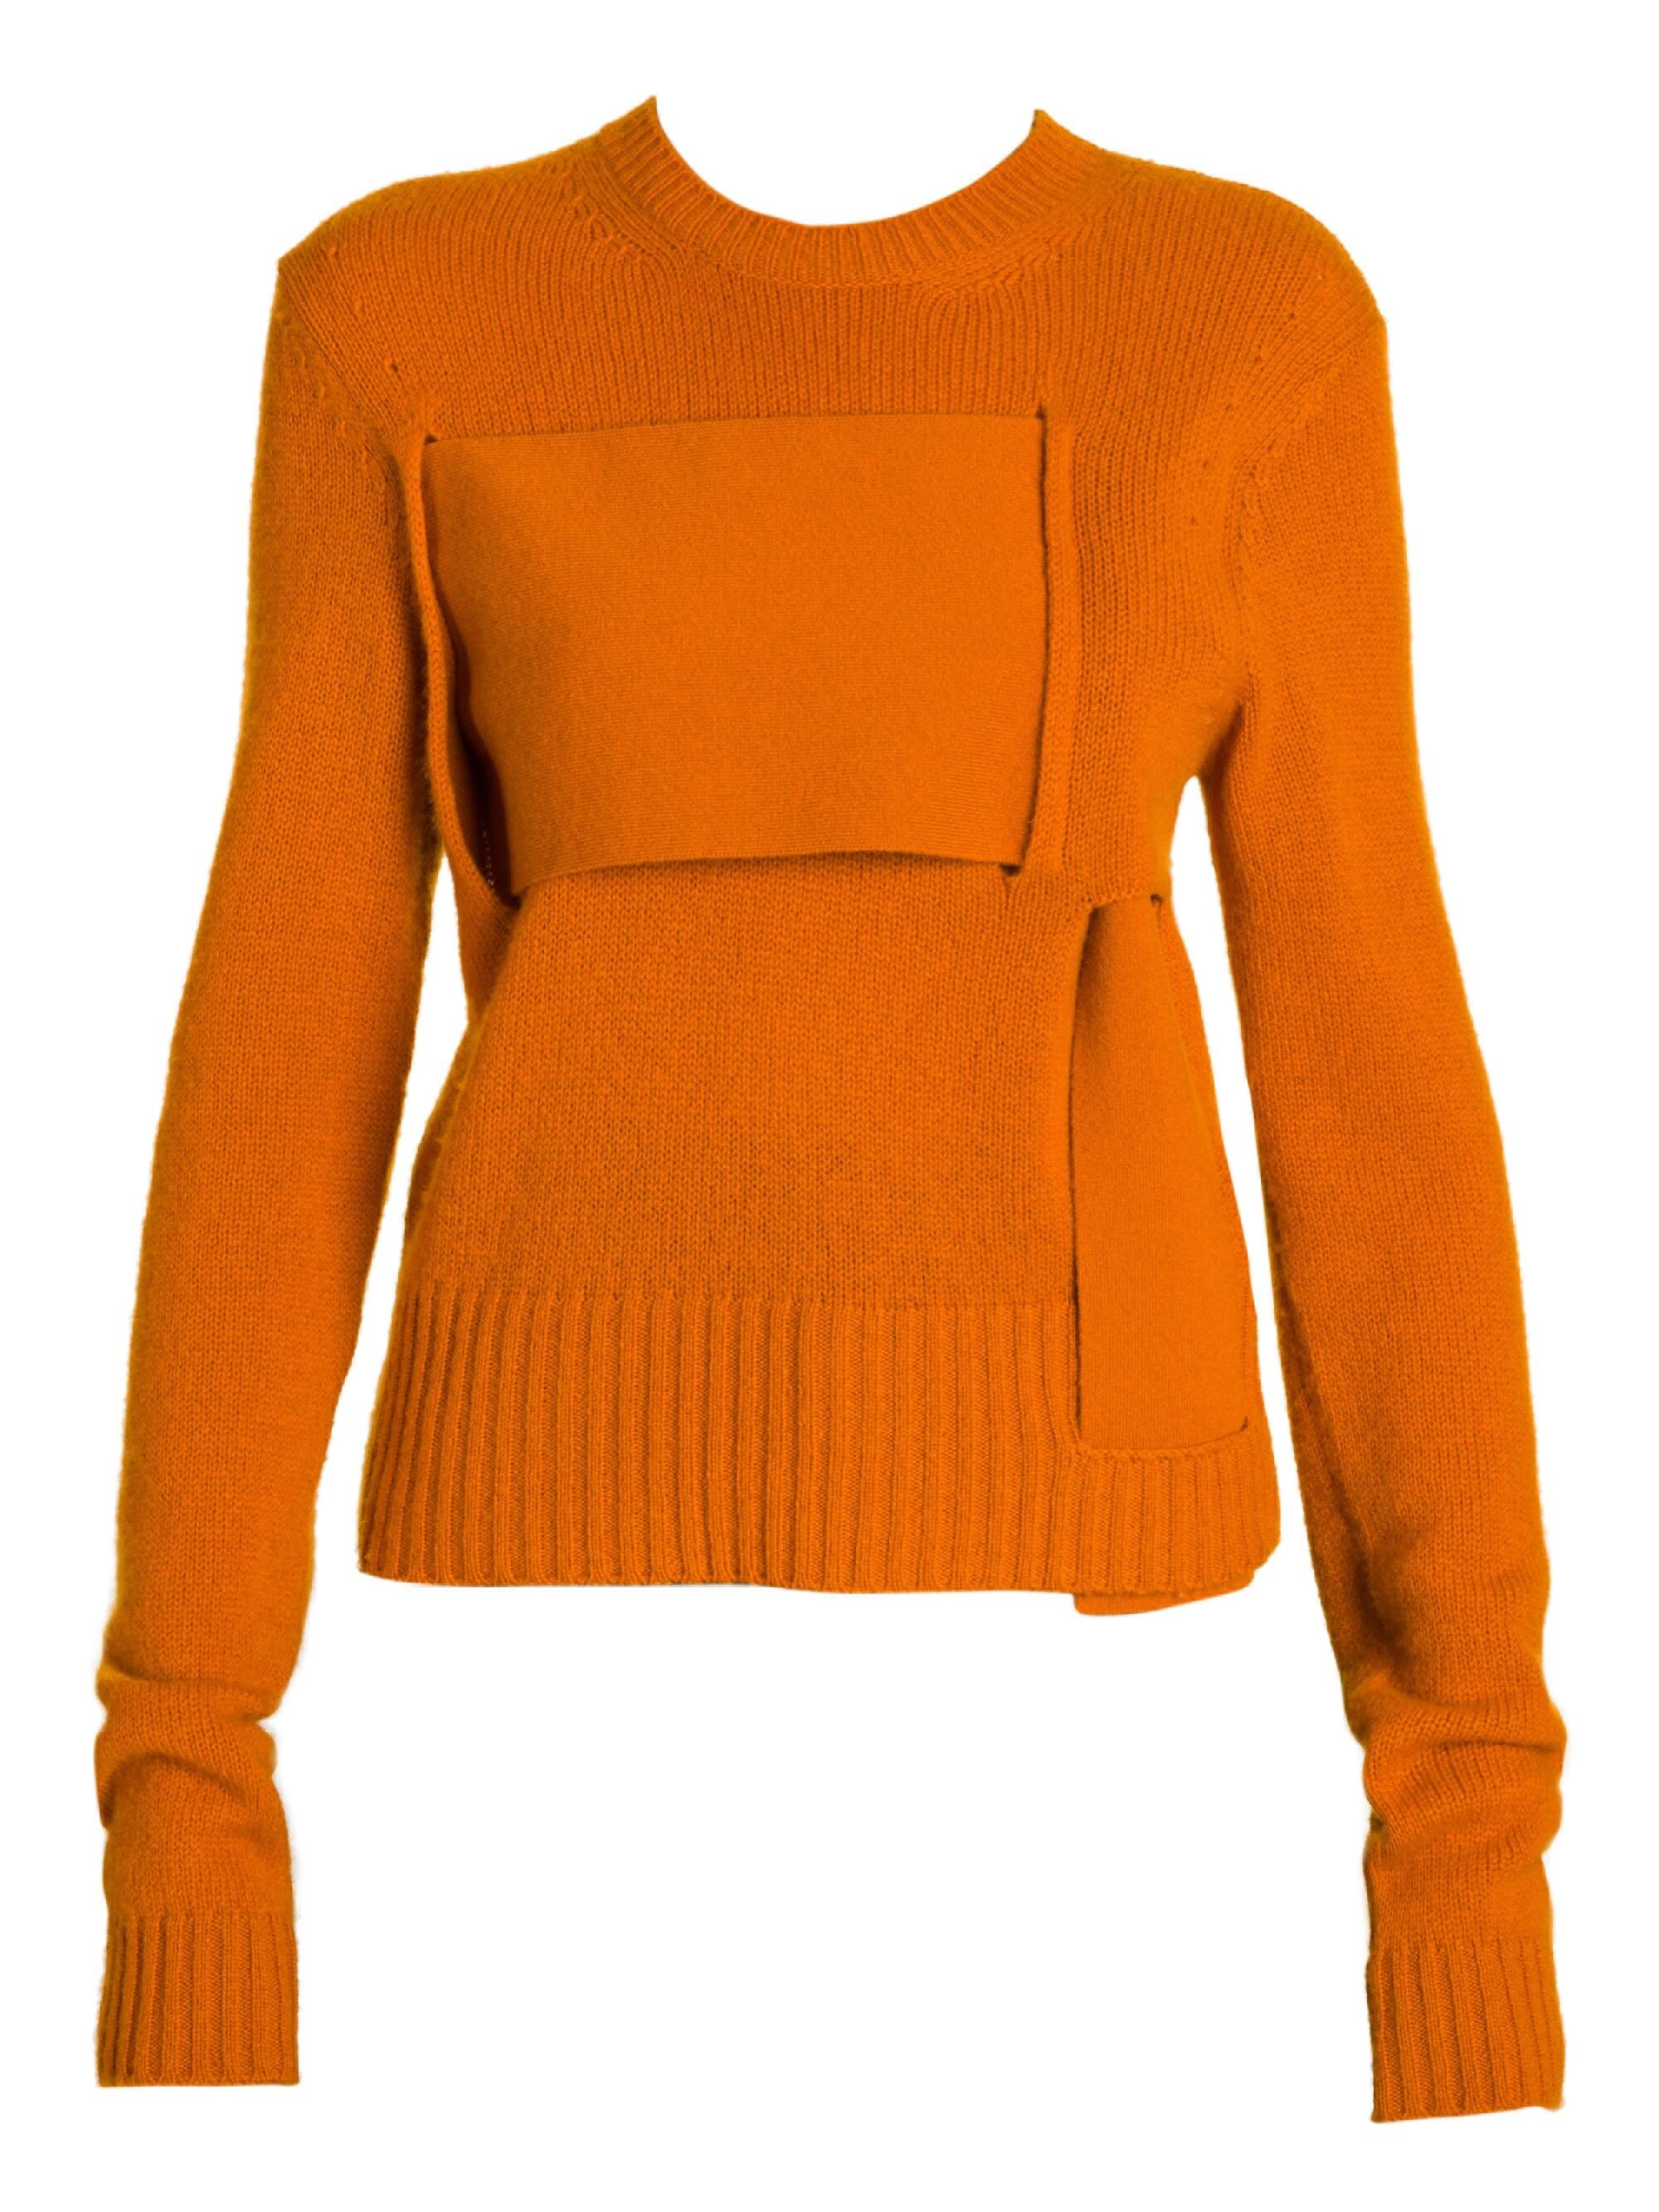 Bottega Veneta Women's Cashmere Blend Interwoven Sweater - Orange in ...